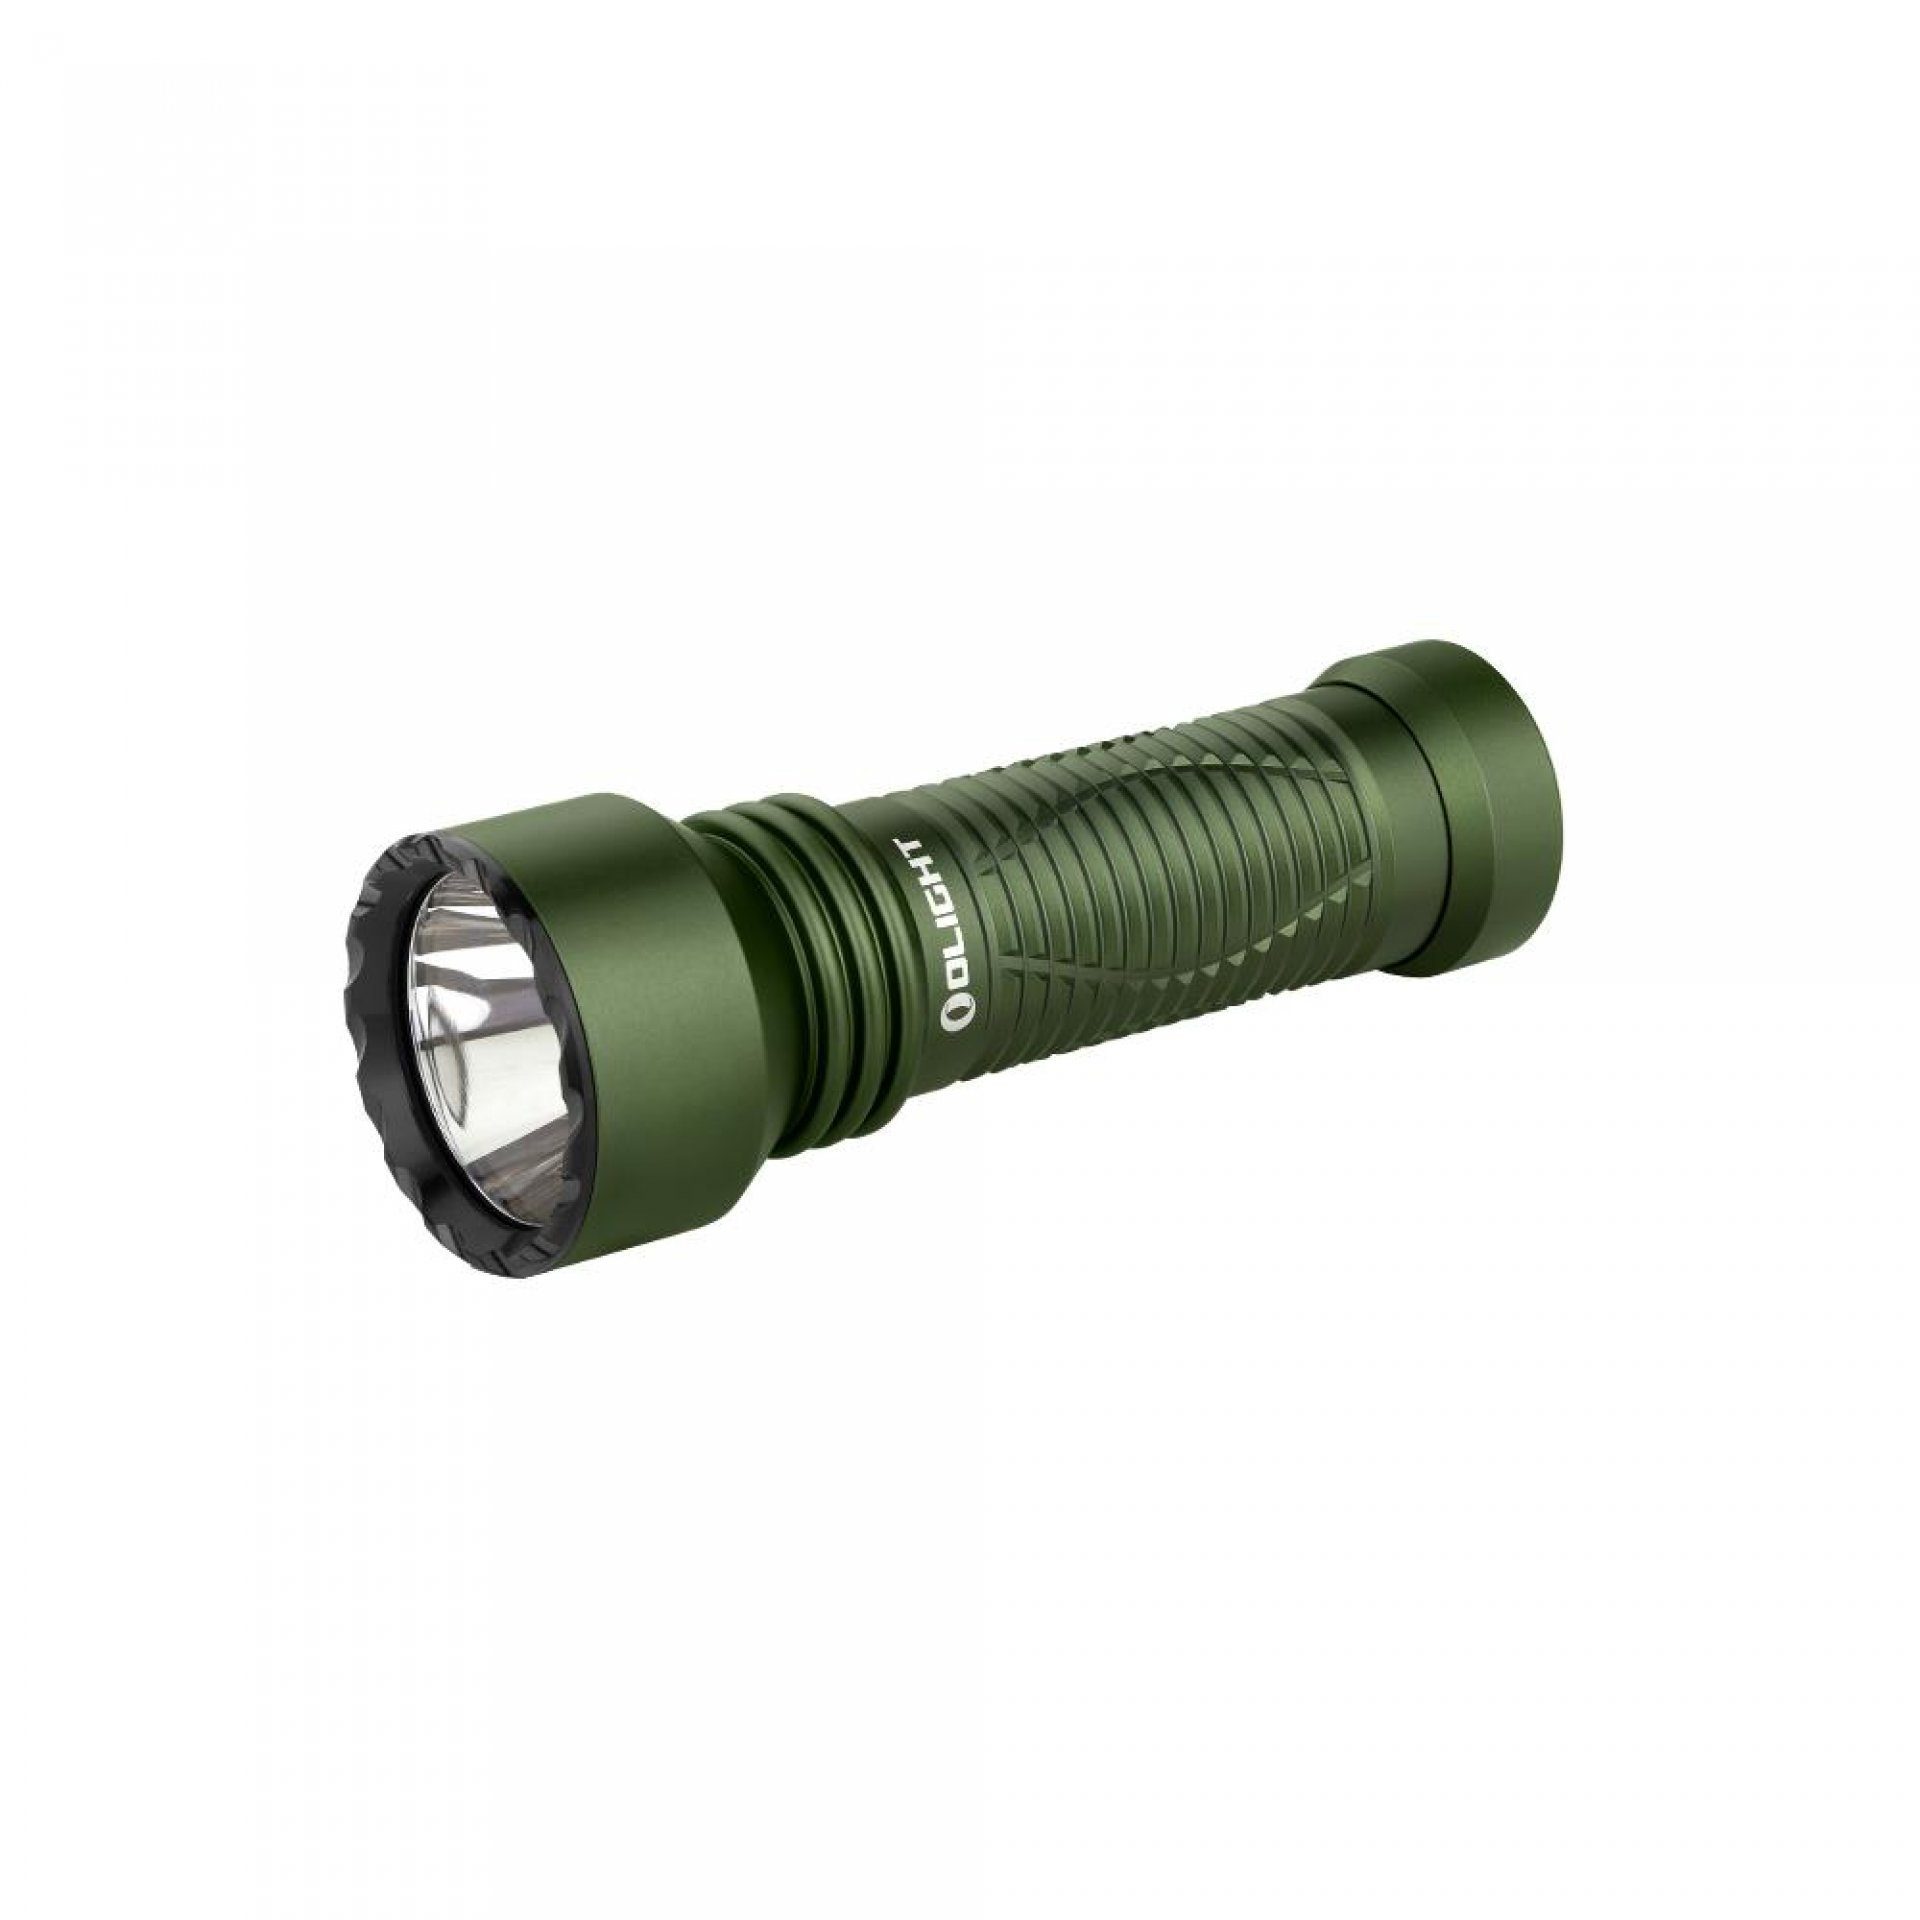 OLIGHT LED Taschenlampe Javelot Mini LED taktische Taschenlampe mit einer runden Lichtquelle, wiederaufbare IPX8 zoombare Handlampe für Notfall, Patrouille, Camping OD Grün | Taschenlampen